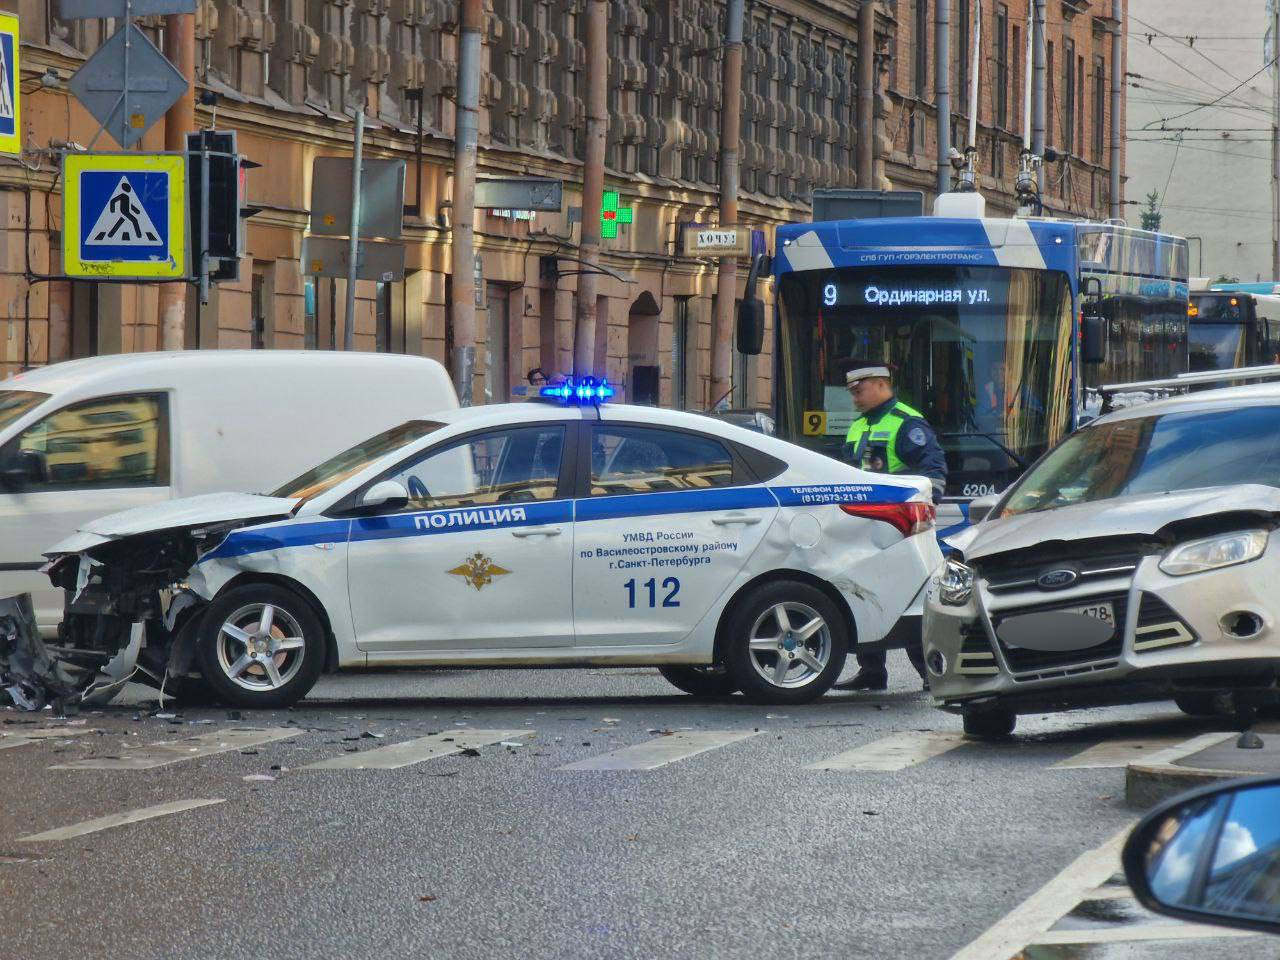 Полицейская машина. Машина "полиция". Полицейские машины Санкт-Петербурга. Разбитые полицейские машины. Чуть не попал в аварию